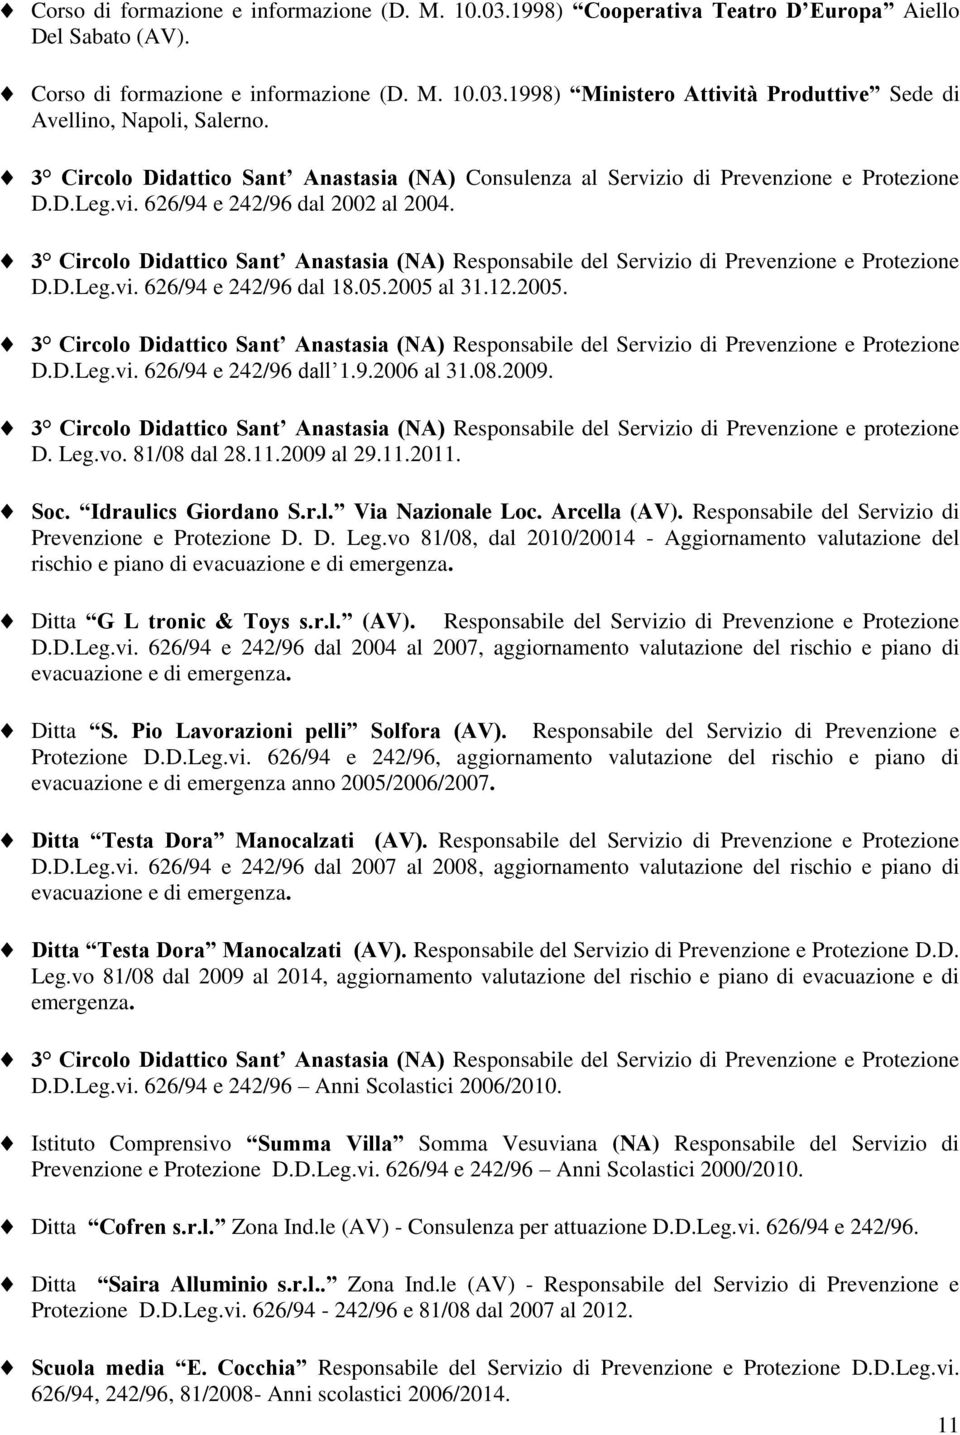 3 Circolo Didattico Sant Anastasia (NA) Responsabile del Servizio di Prevenzione e Protezione D.D.Leg.vi. 626/94 e 242/96 dal 18.05.2005 